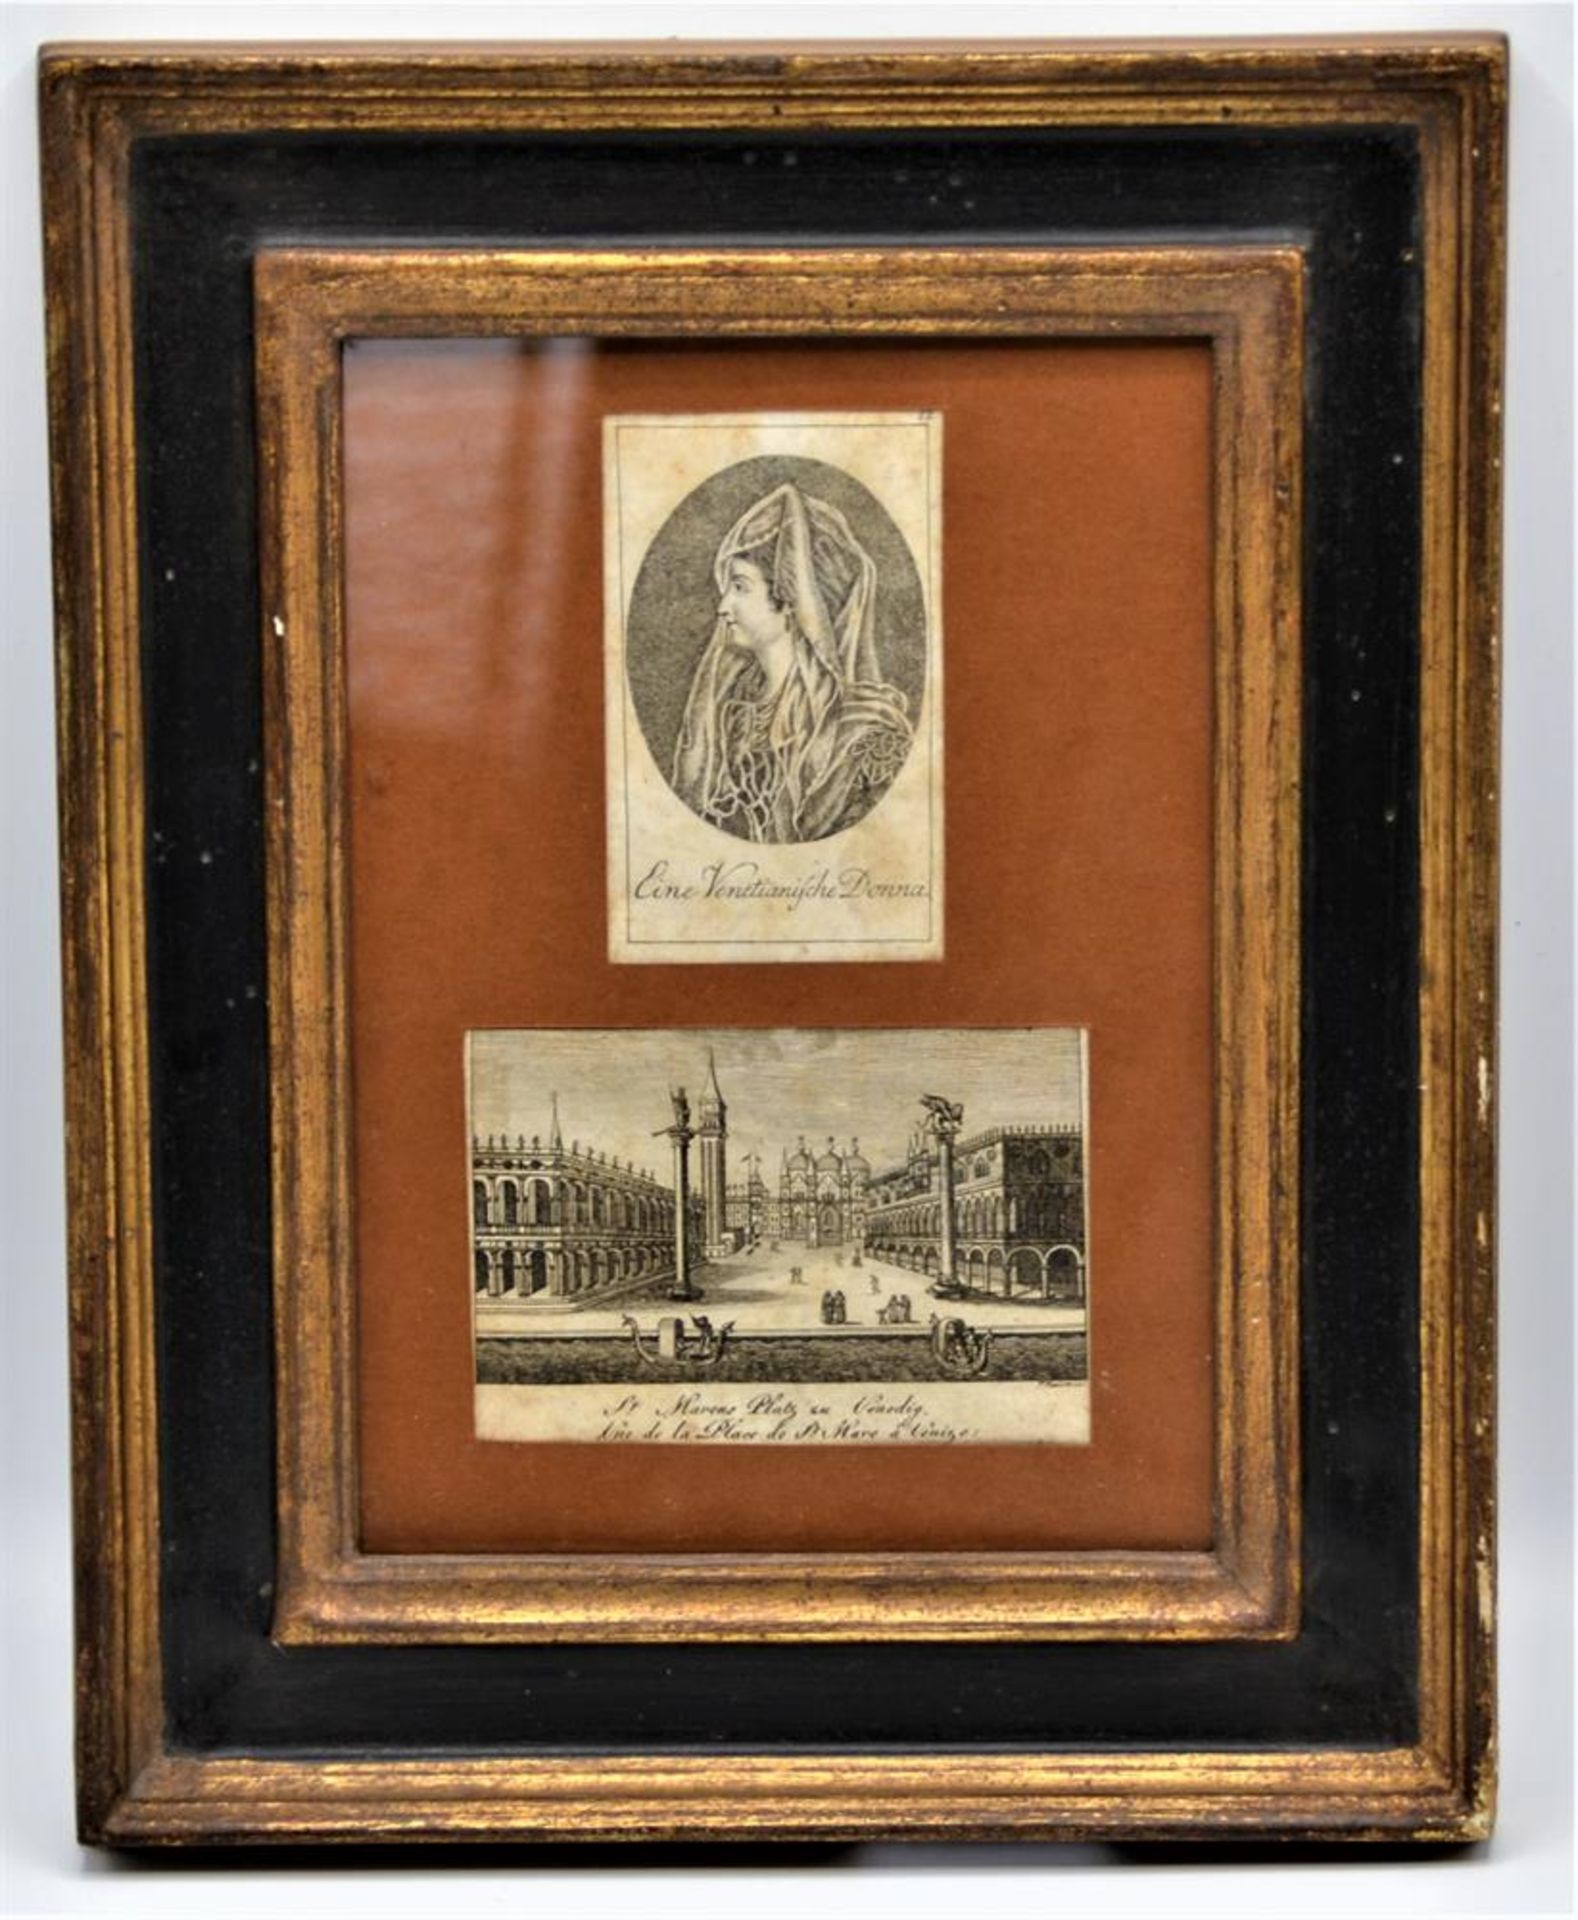 Bild 2 kleine Kupferstiche gerahmt ,,Eine Venetianische ,,Donna" ,,St. Marcus Platz zu Venedig"